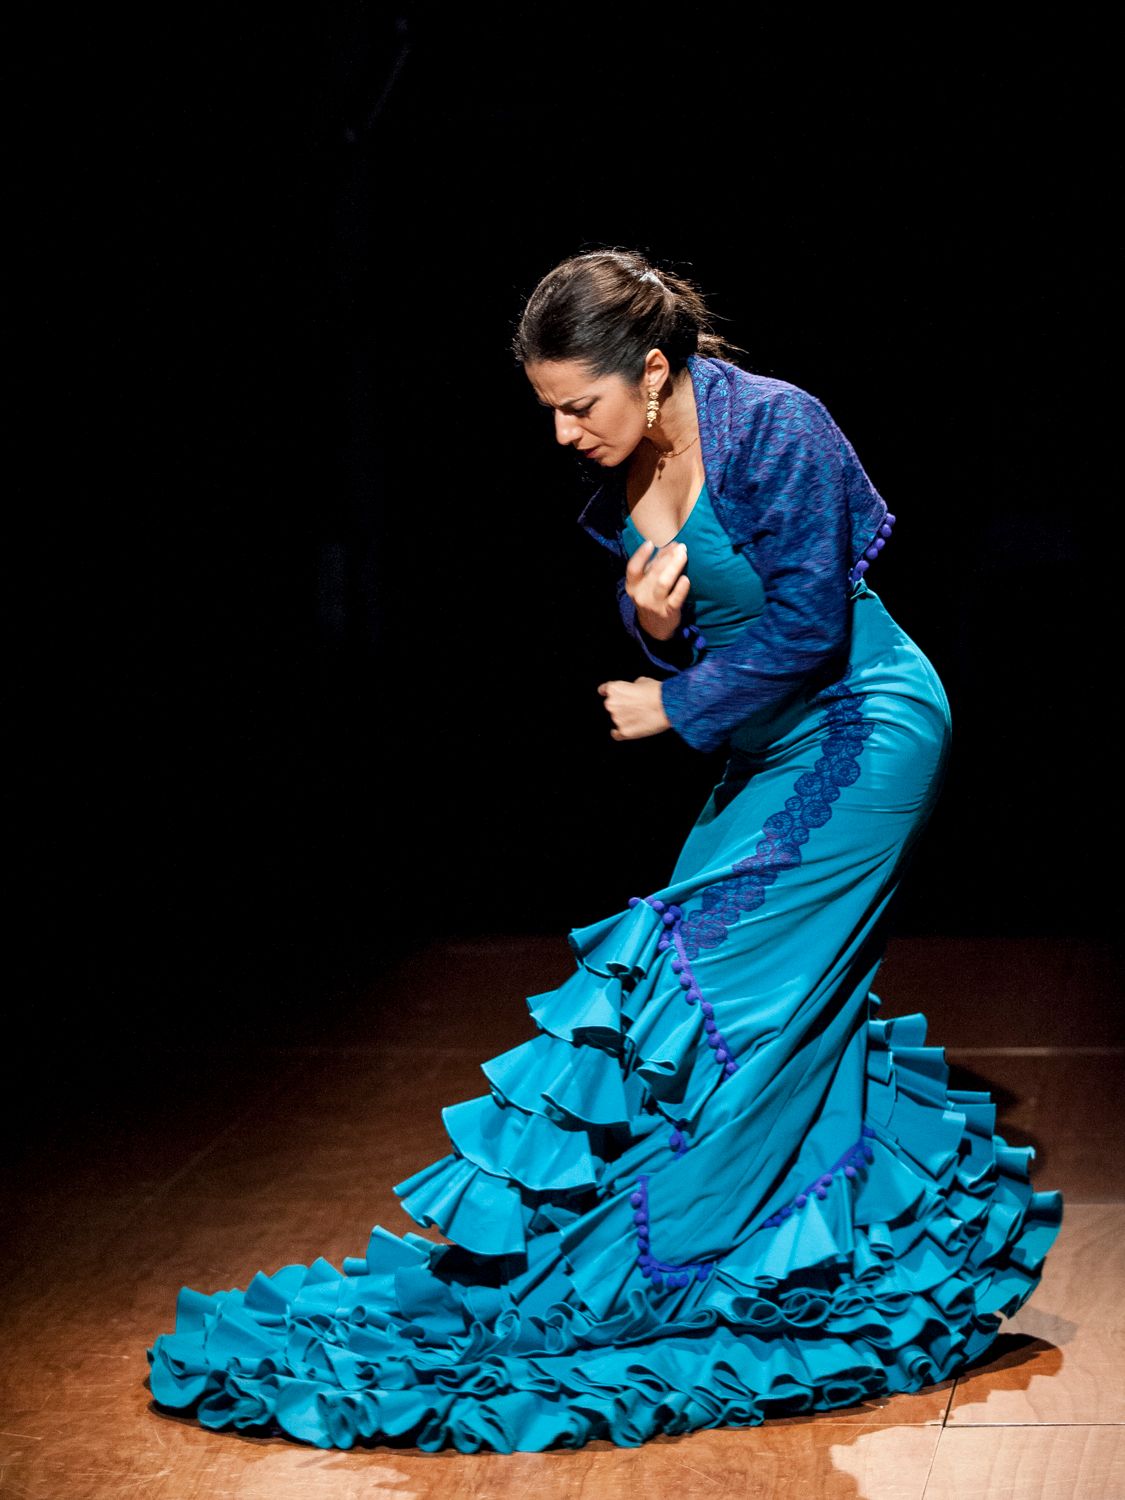 Het laatste weekend van september komt Marisol Valderrama Guerrero voor workshops en een voorstelling. Zij bestudeerde de Indische invloeden op de flamenco en verbindt in haar workshops en choreografieën flamenco met de oosterse muziekcultuur, bijvoorbeeld met Naad Yoga. (Klik op de foto voor meer info)